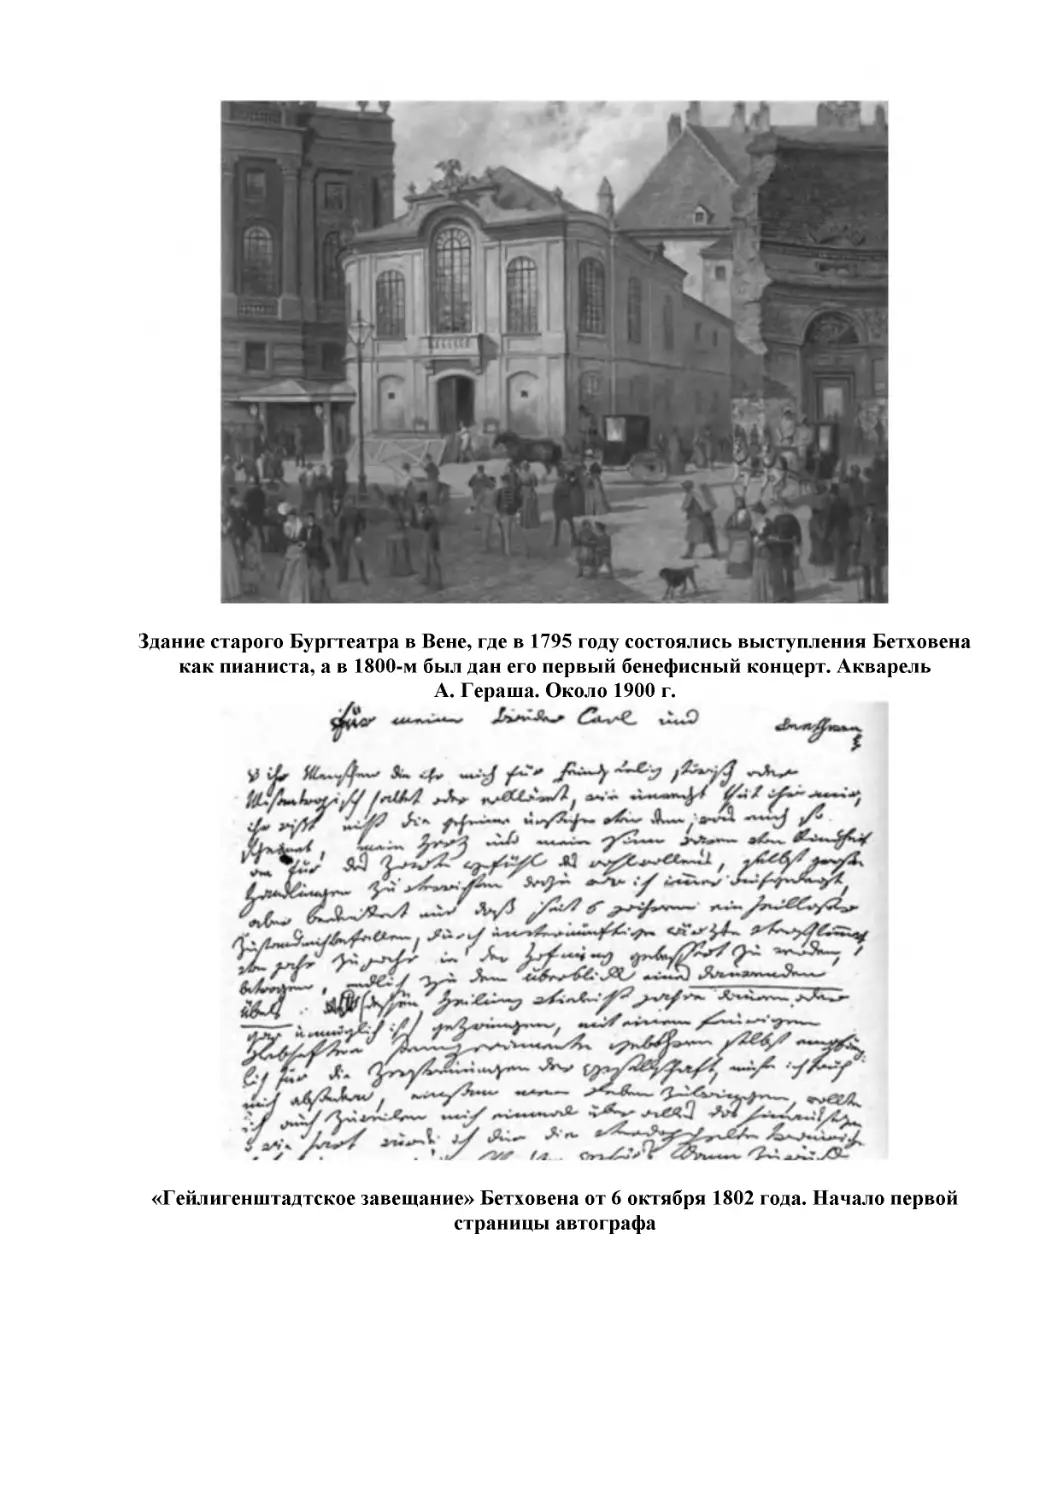 Здание старого Бургтеатра в Вене, где в 1795 году состоялись выступления Бетховена как пианиста, а в 1800-м был дан его первый бенефисный концерт. Акварель А. Гераша. Около 1900 г.
«Гейлигенштадтское завещание» Бетховена от 6 октября 1802 года. Начало первой страницы автографа